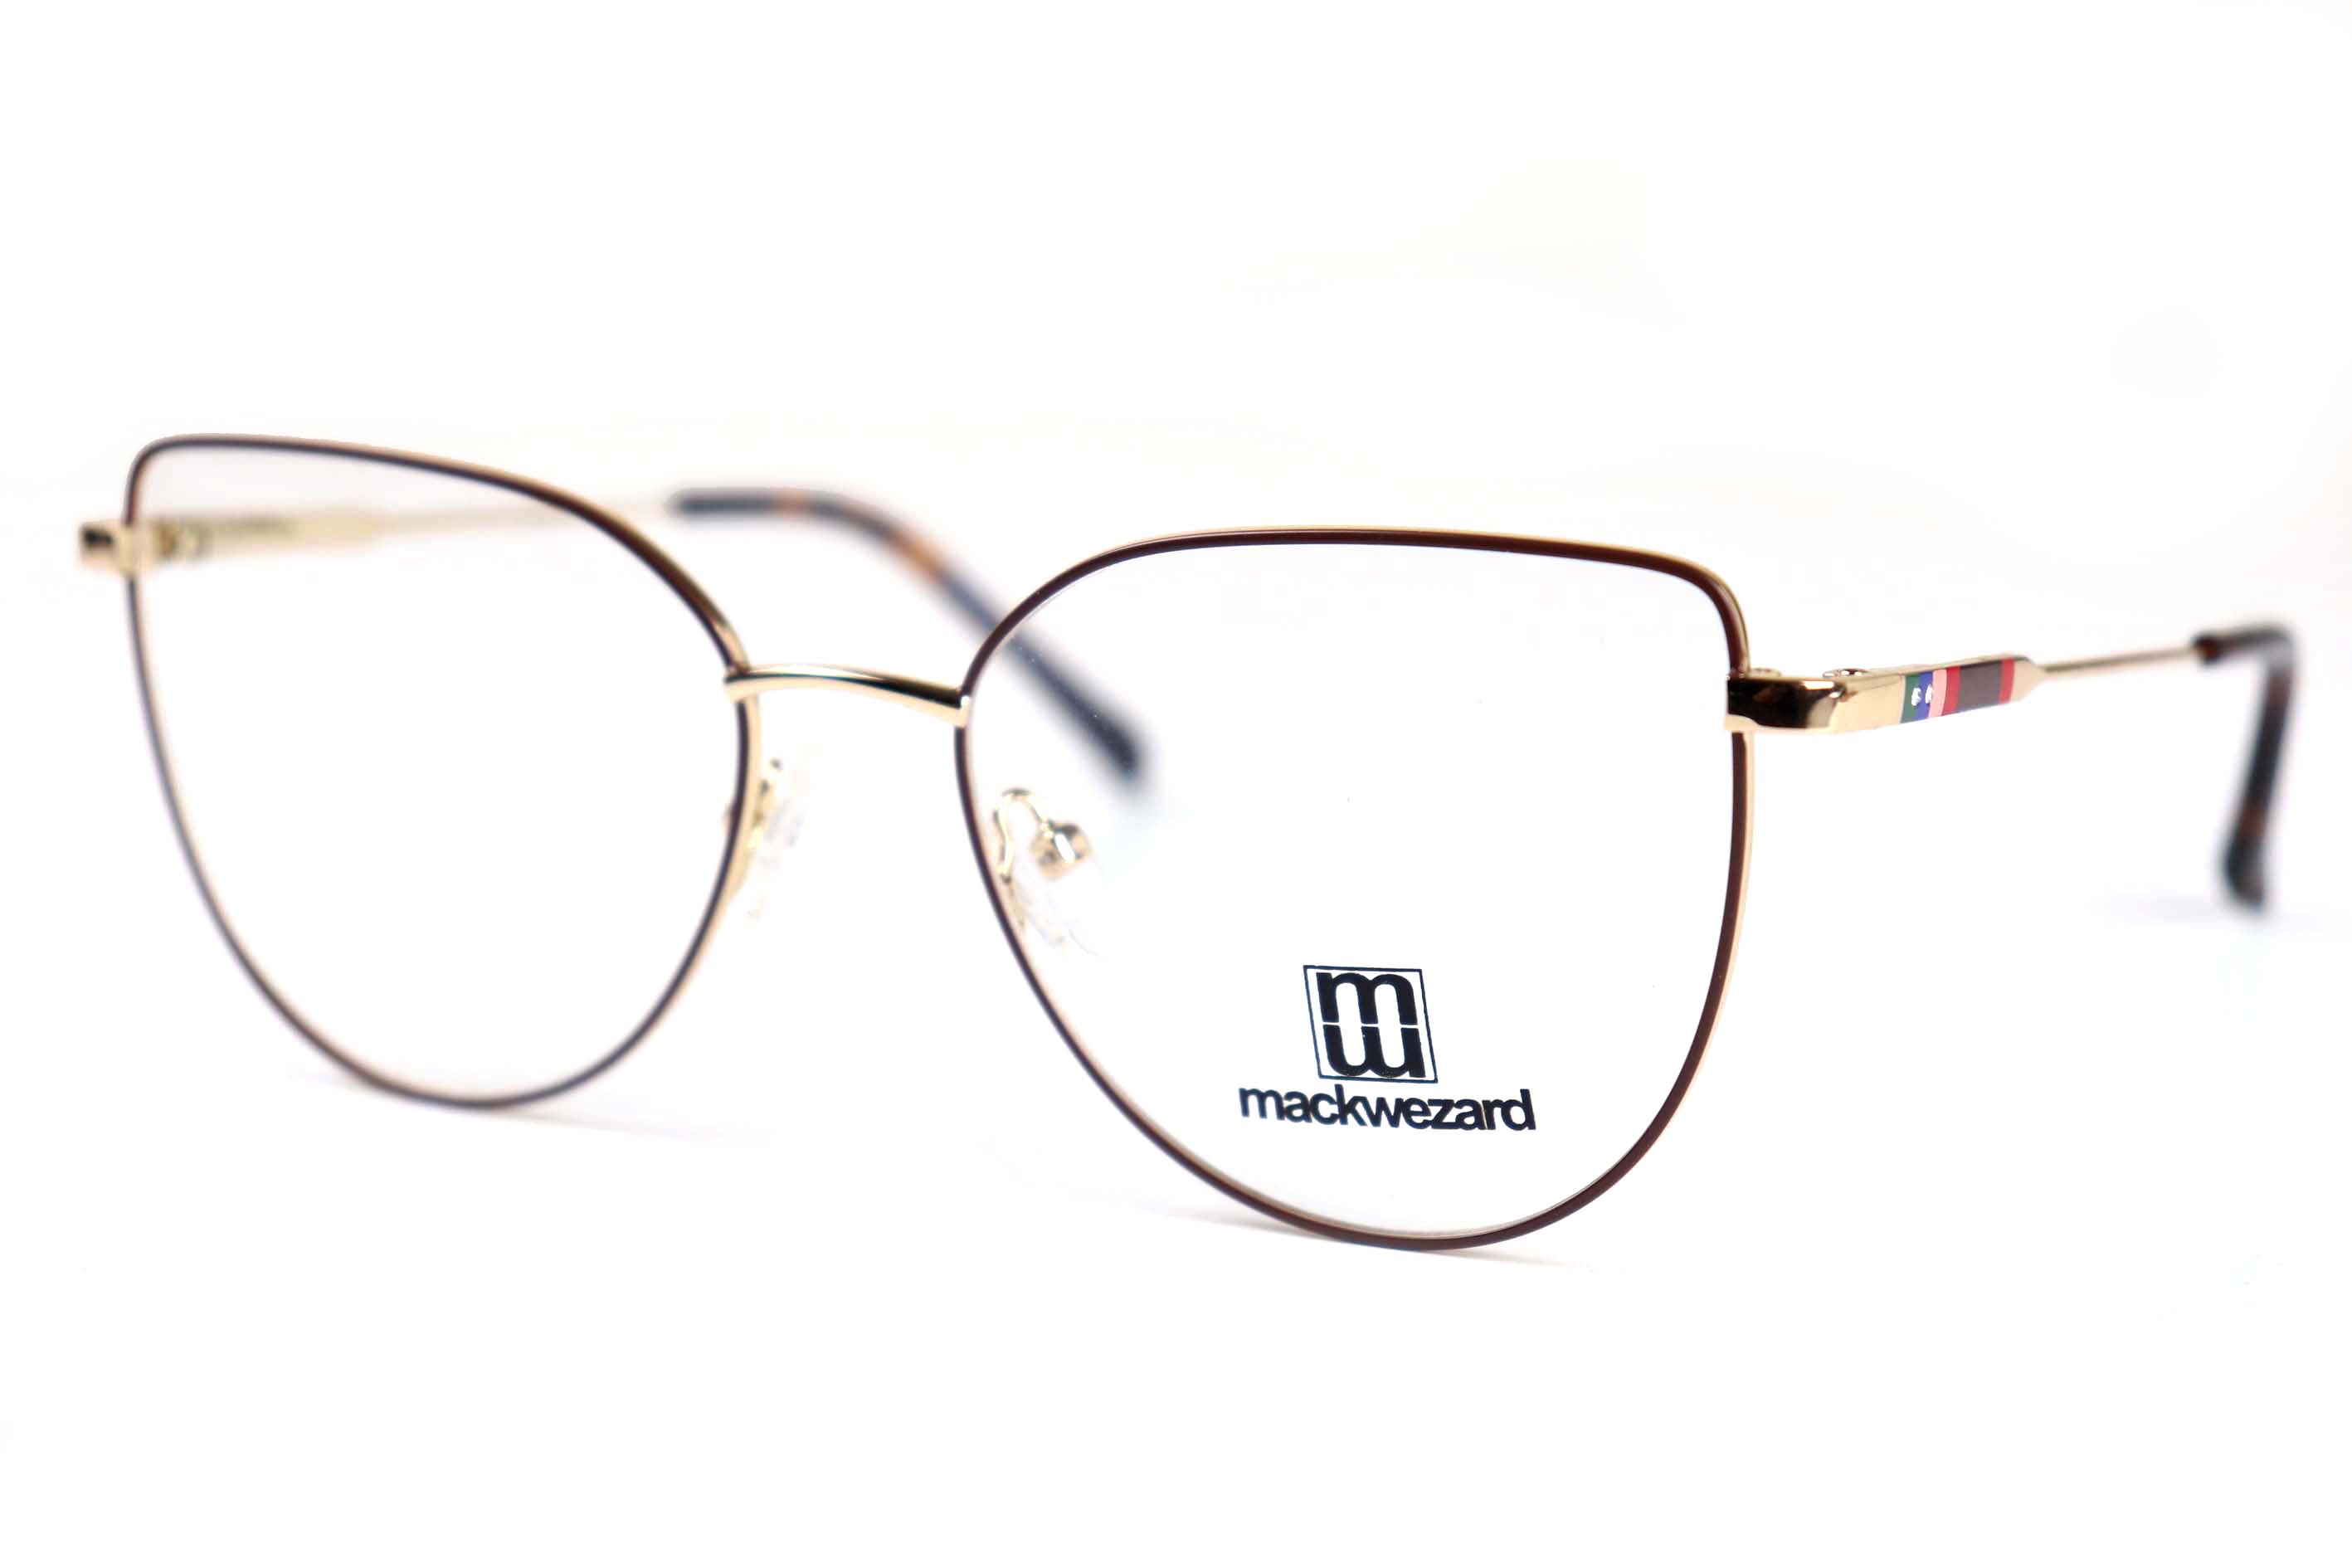 Mackwezard Eyeglasses- 1007-C2-53-18-140